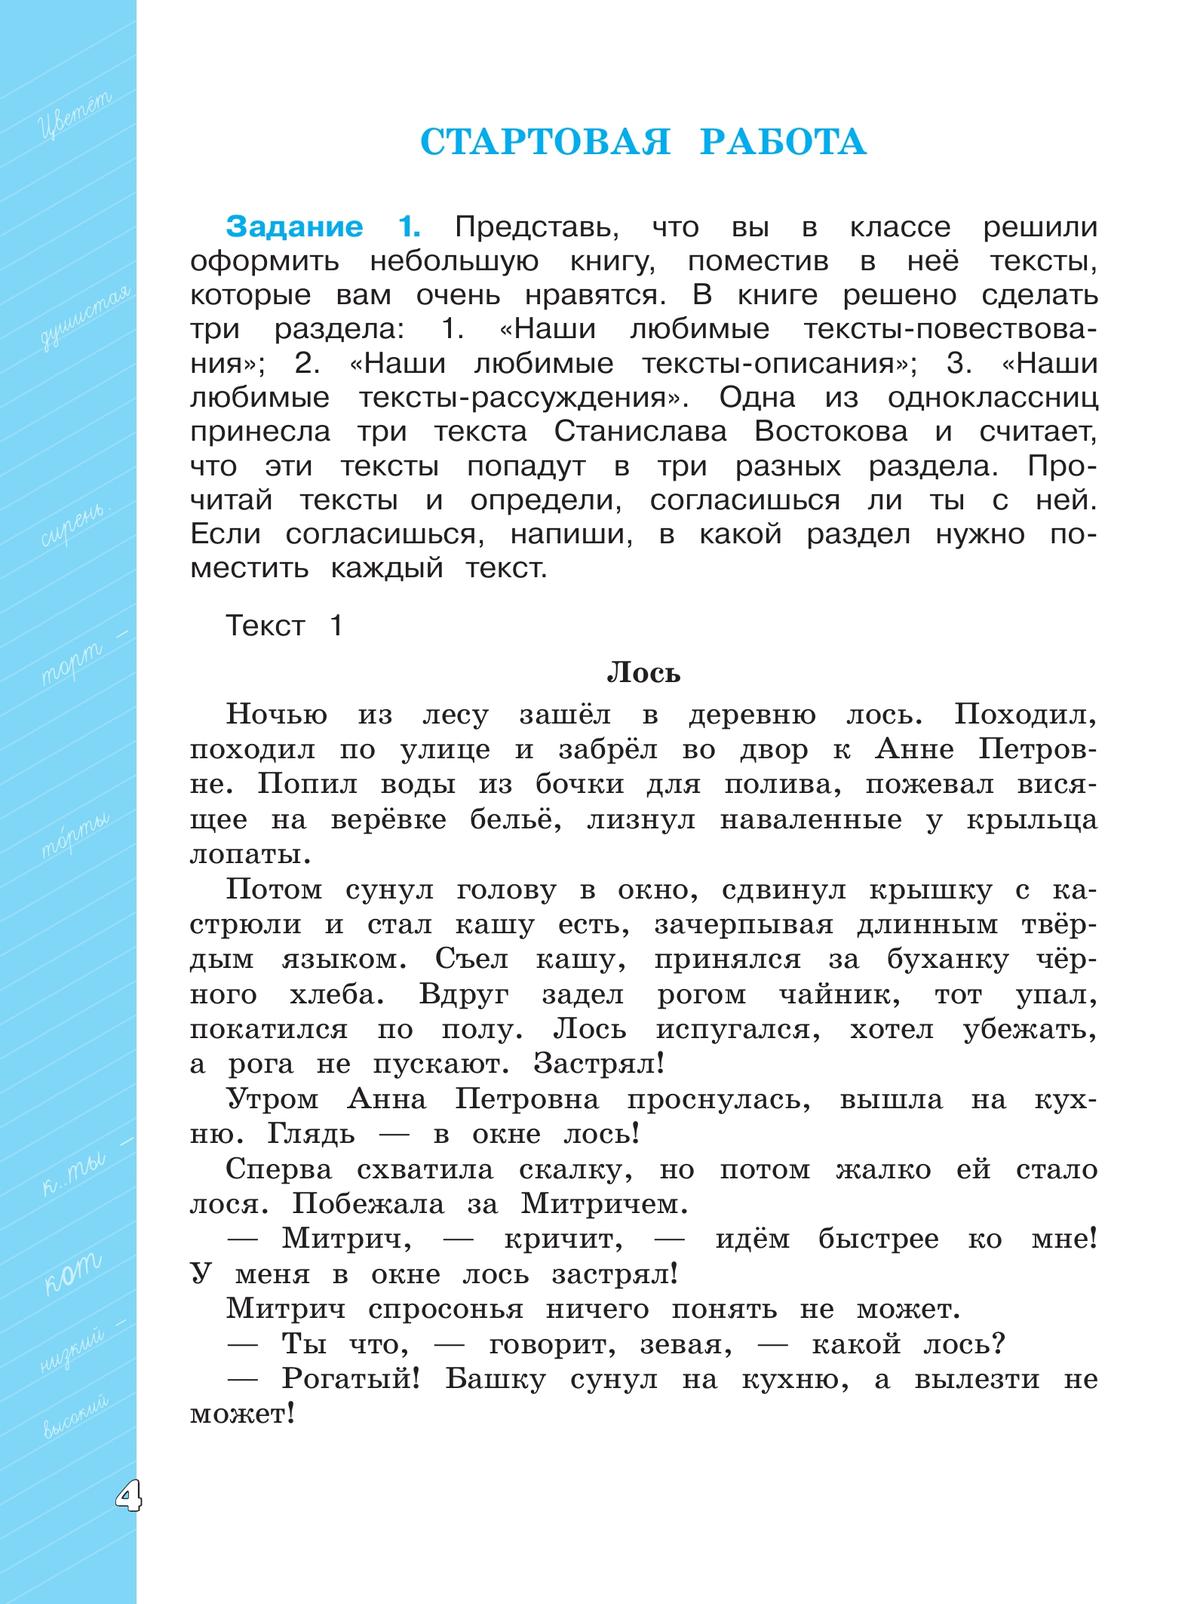 Языковая грамотность. Русский язык. Развитие. Диагностика. 4 класс 5